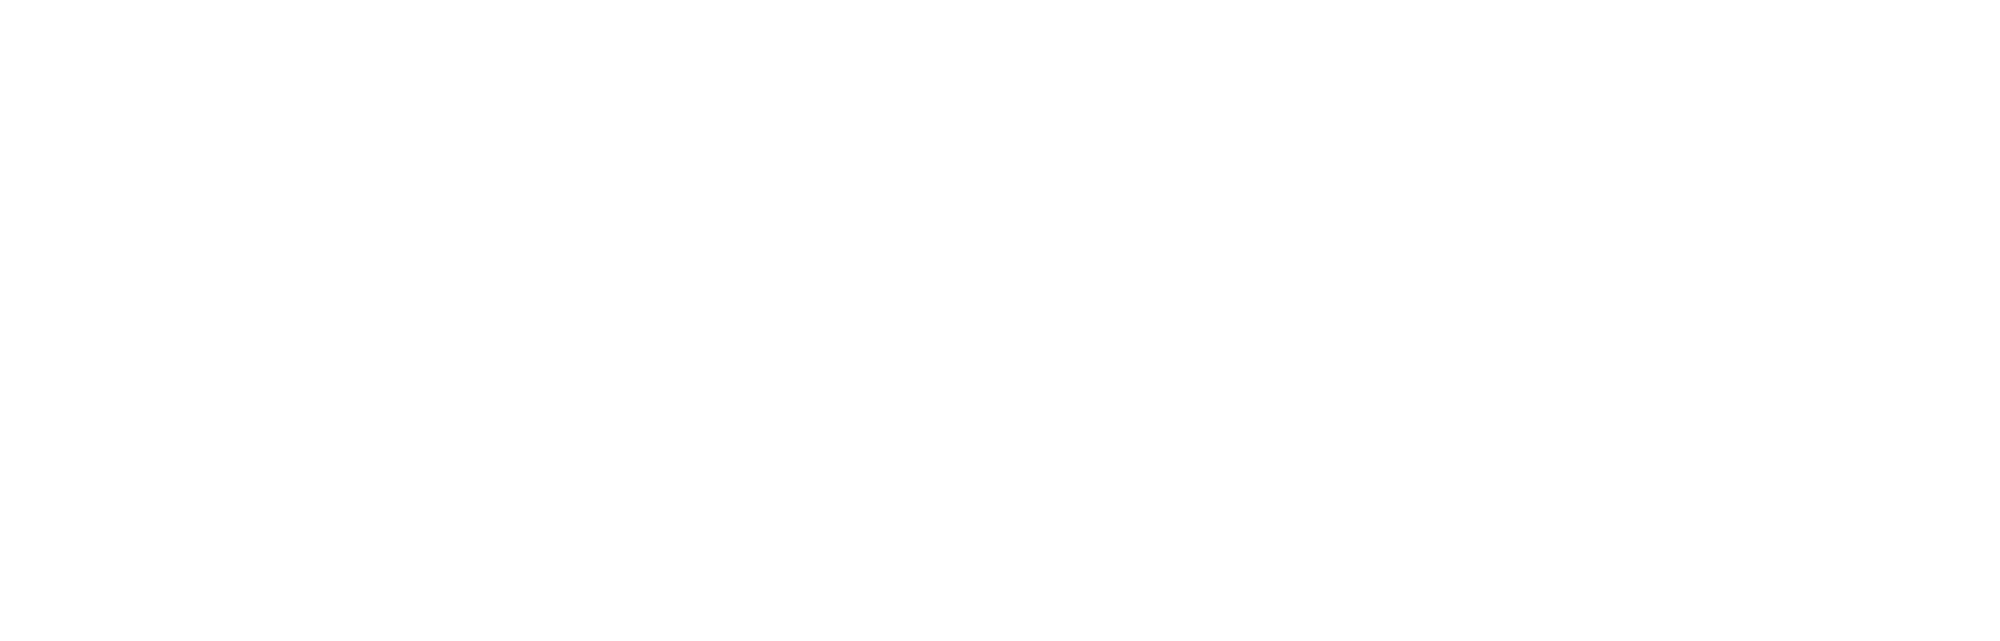 siena white logo